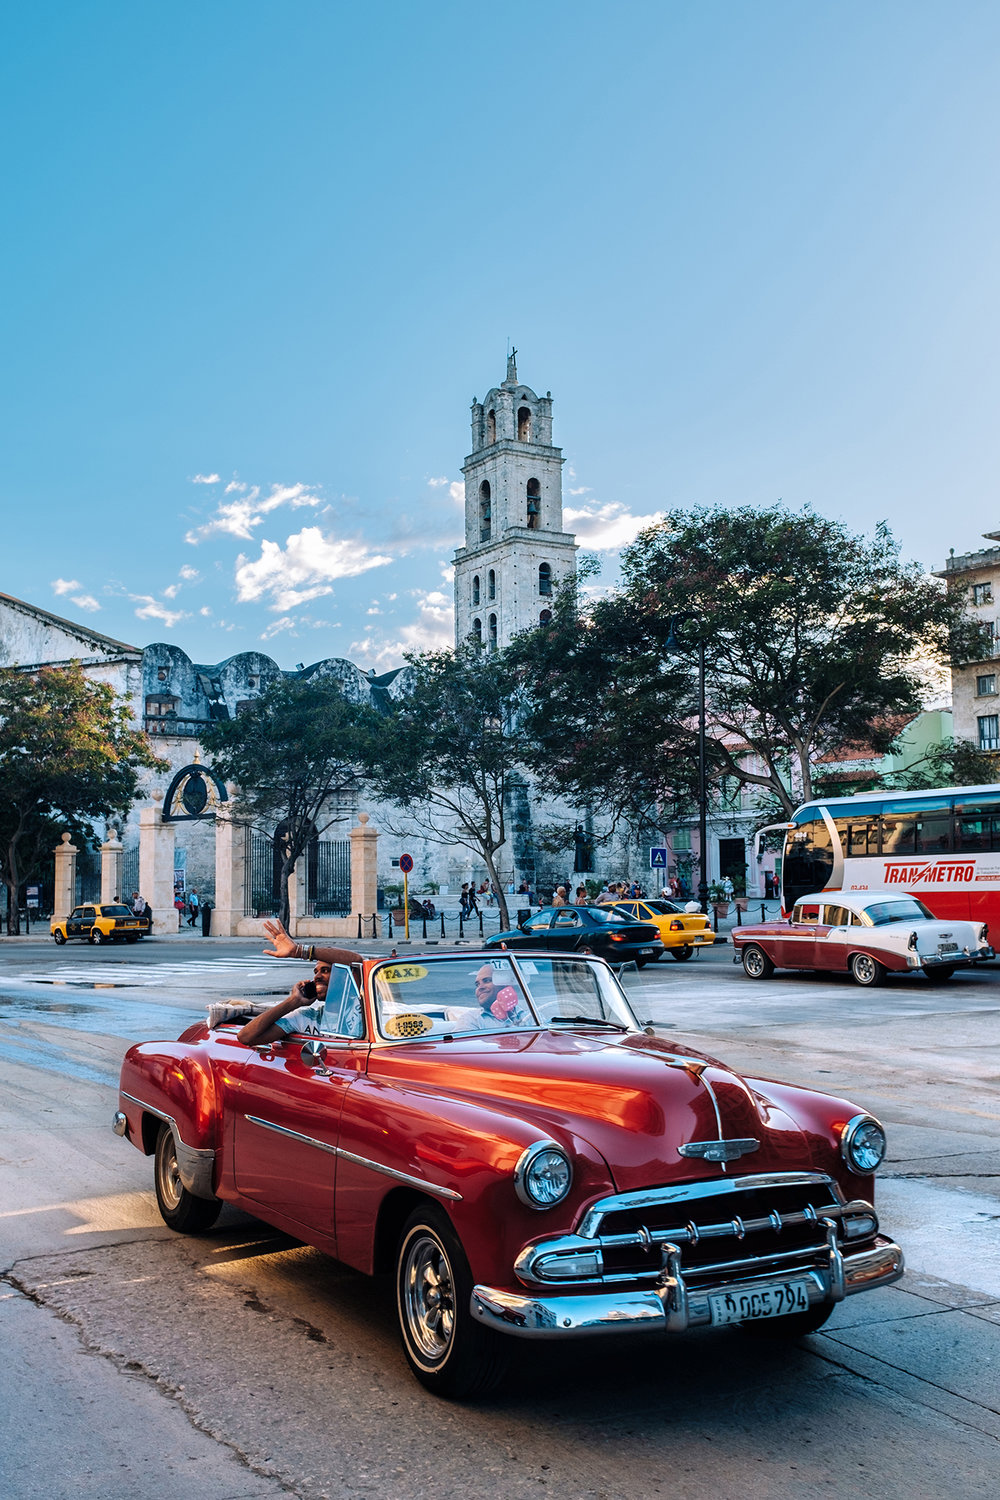 Plaza de San Francisco square in Old Havana